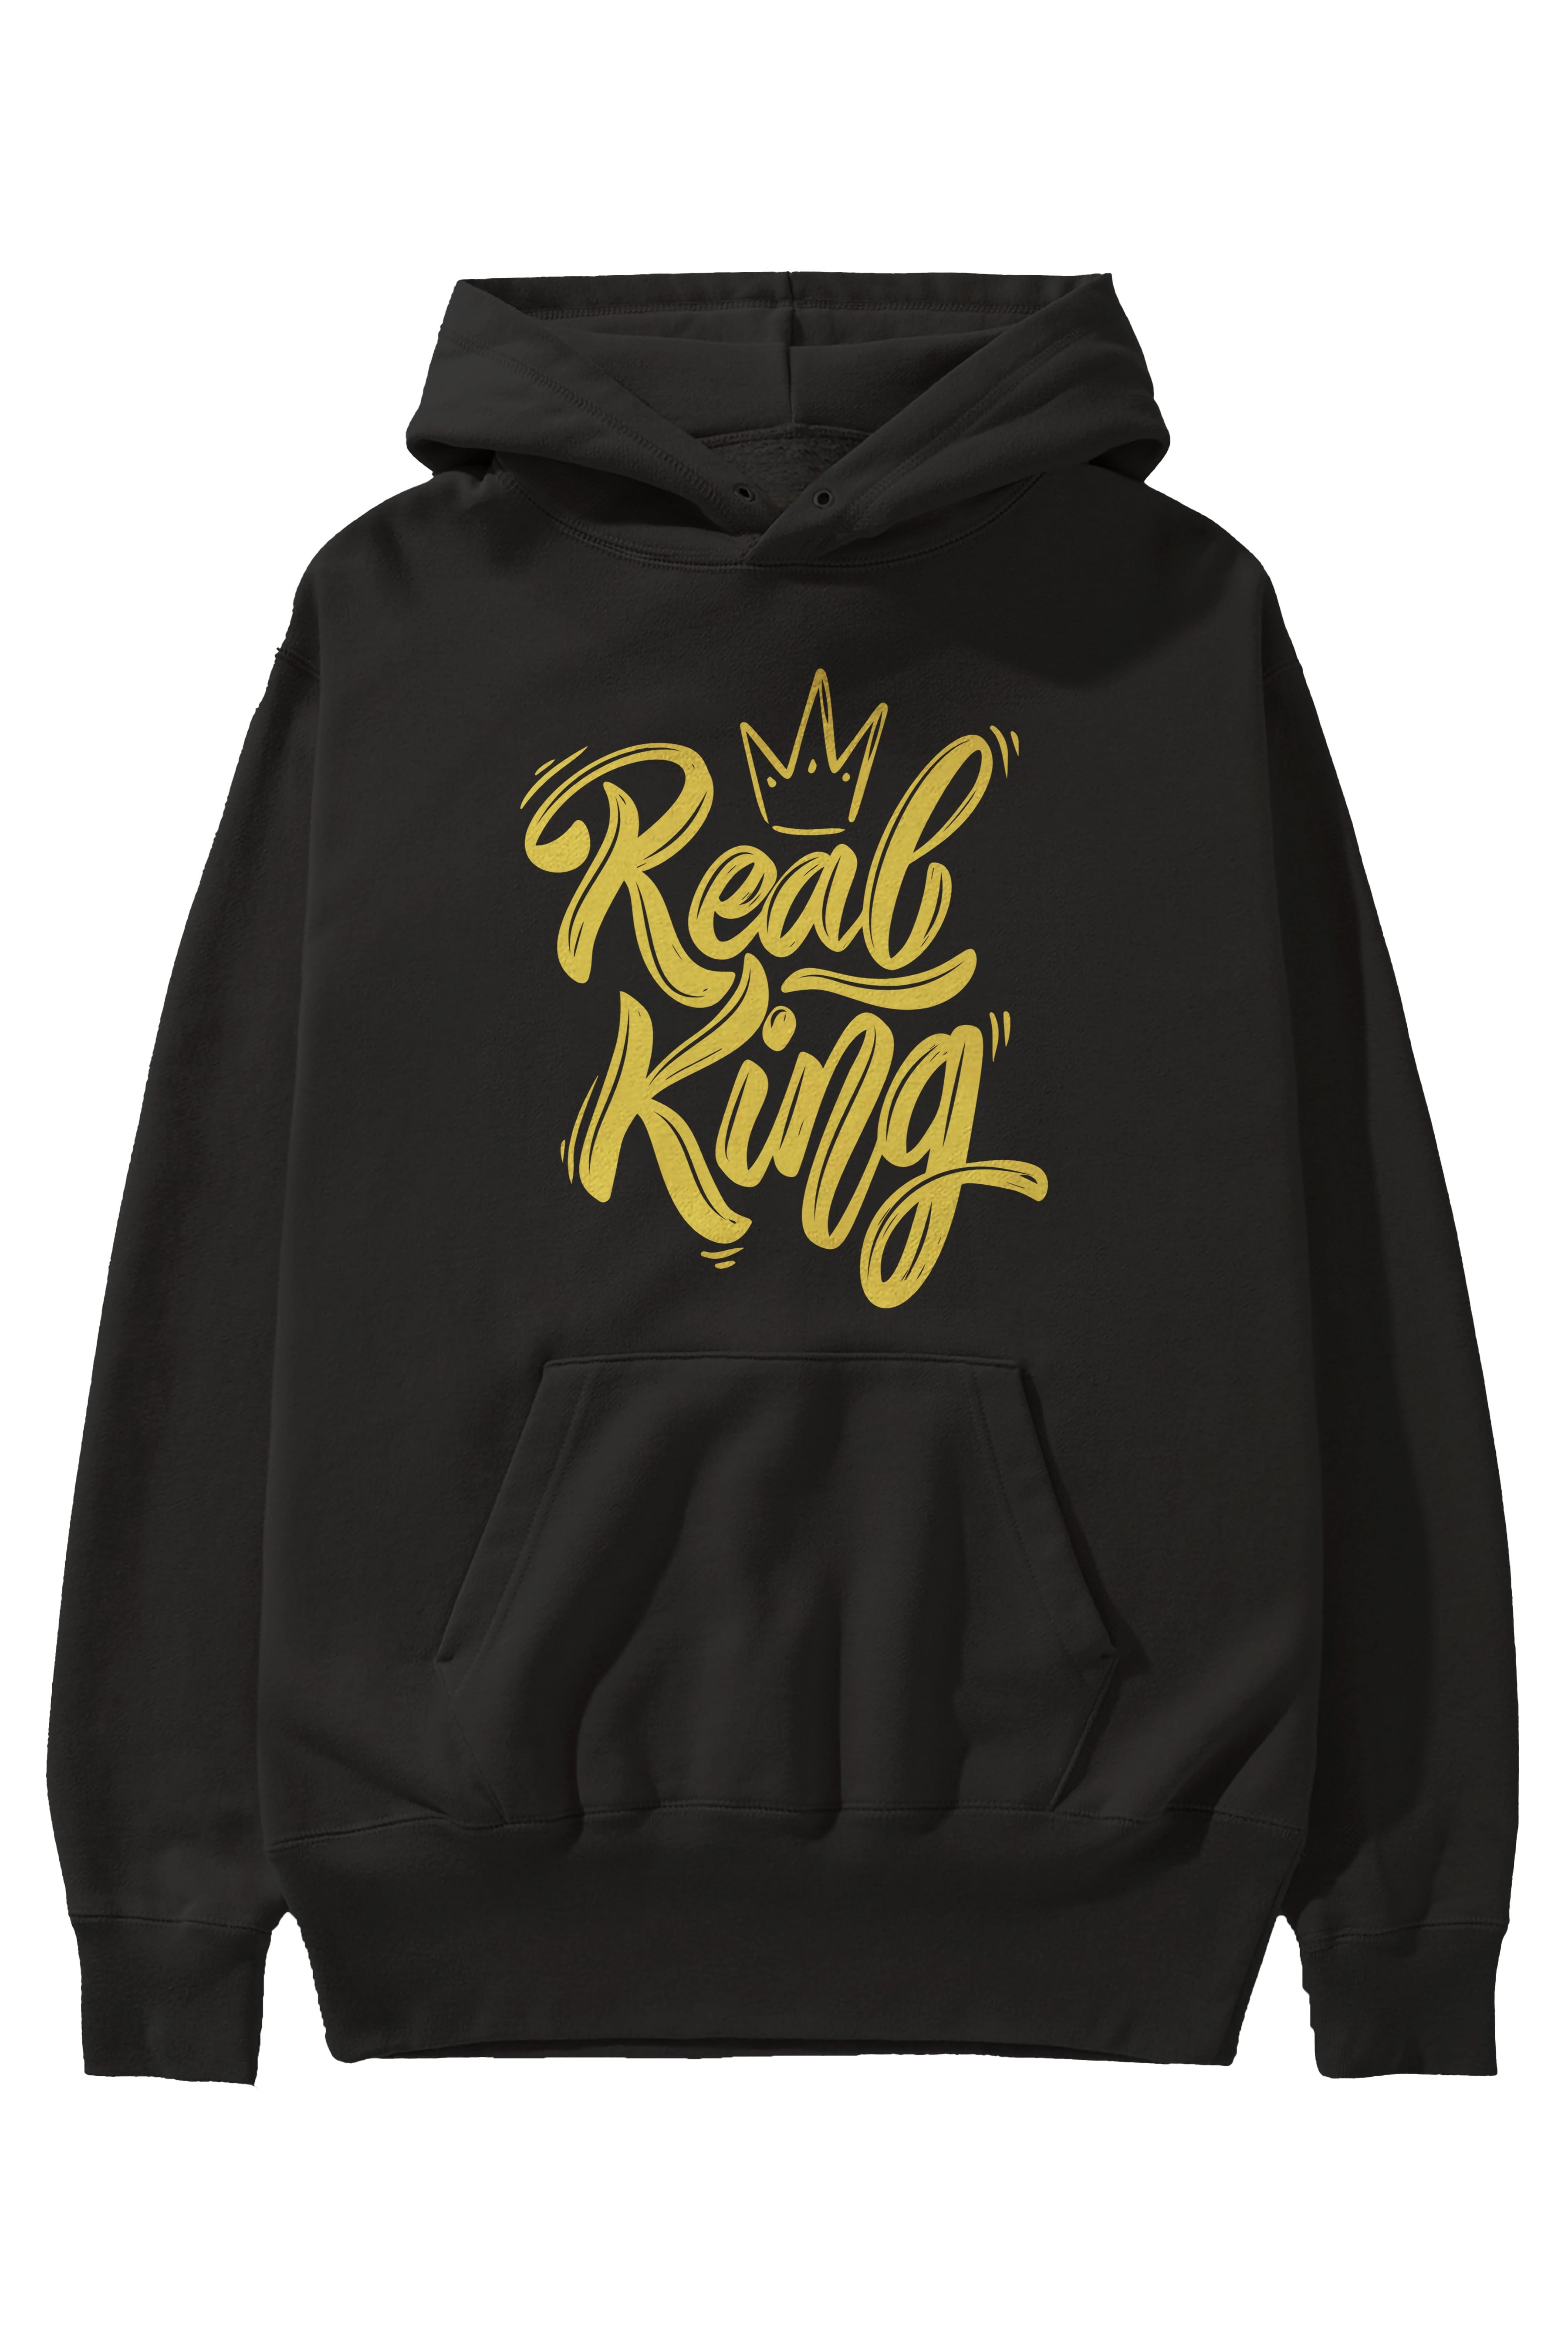 Real King Yazılı Ön Baskılı Oversize Hoodie Kapüşonlu Sweatshirt Erkek Kadın Unisex